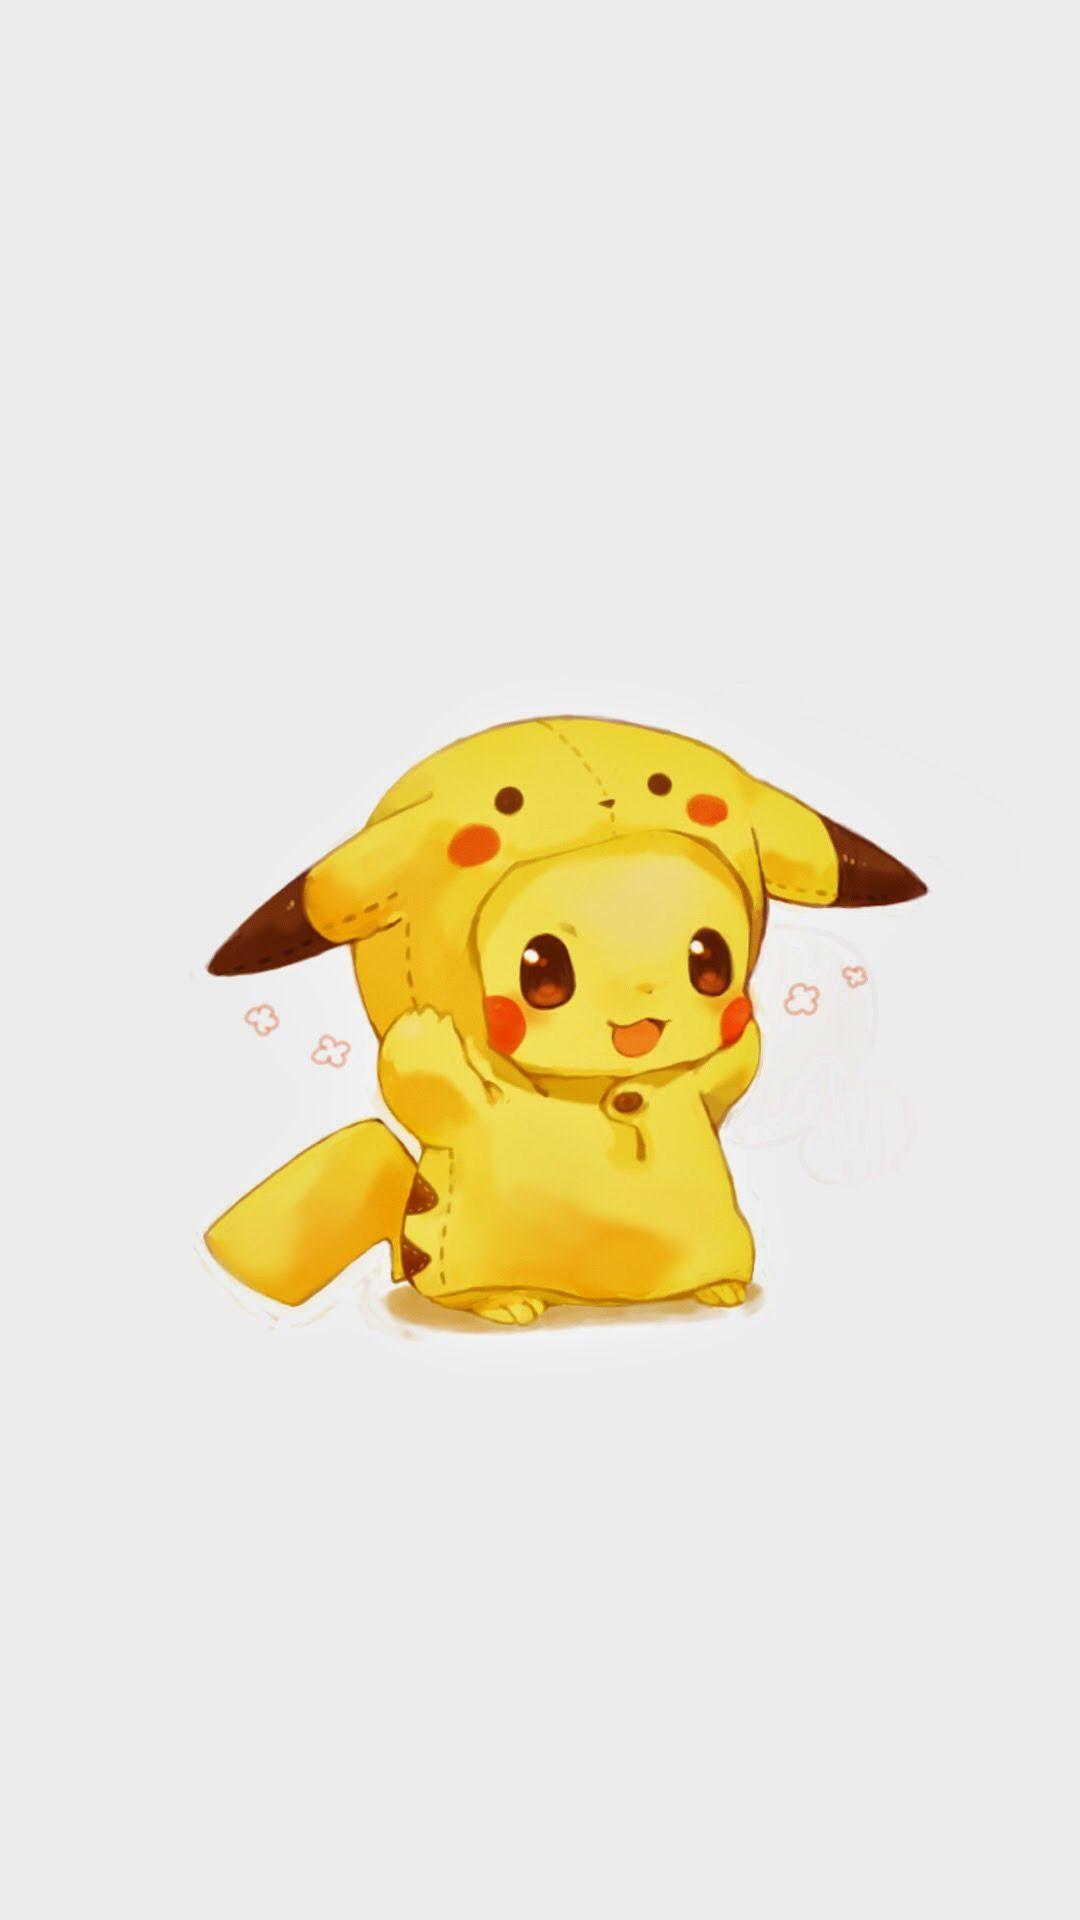 Pikachu Cute Chibi Wallpaper Free Pikachu Cute Chibi Background